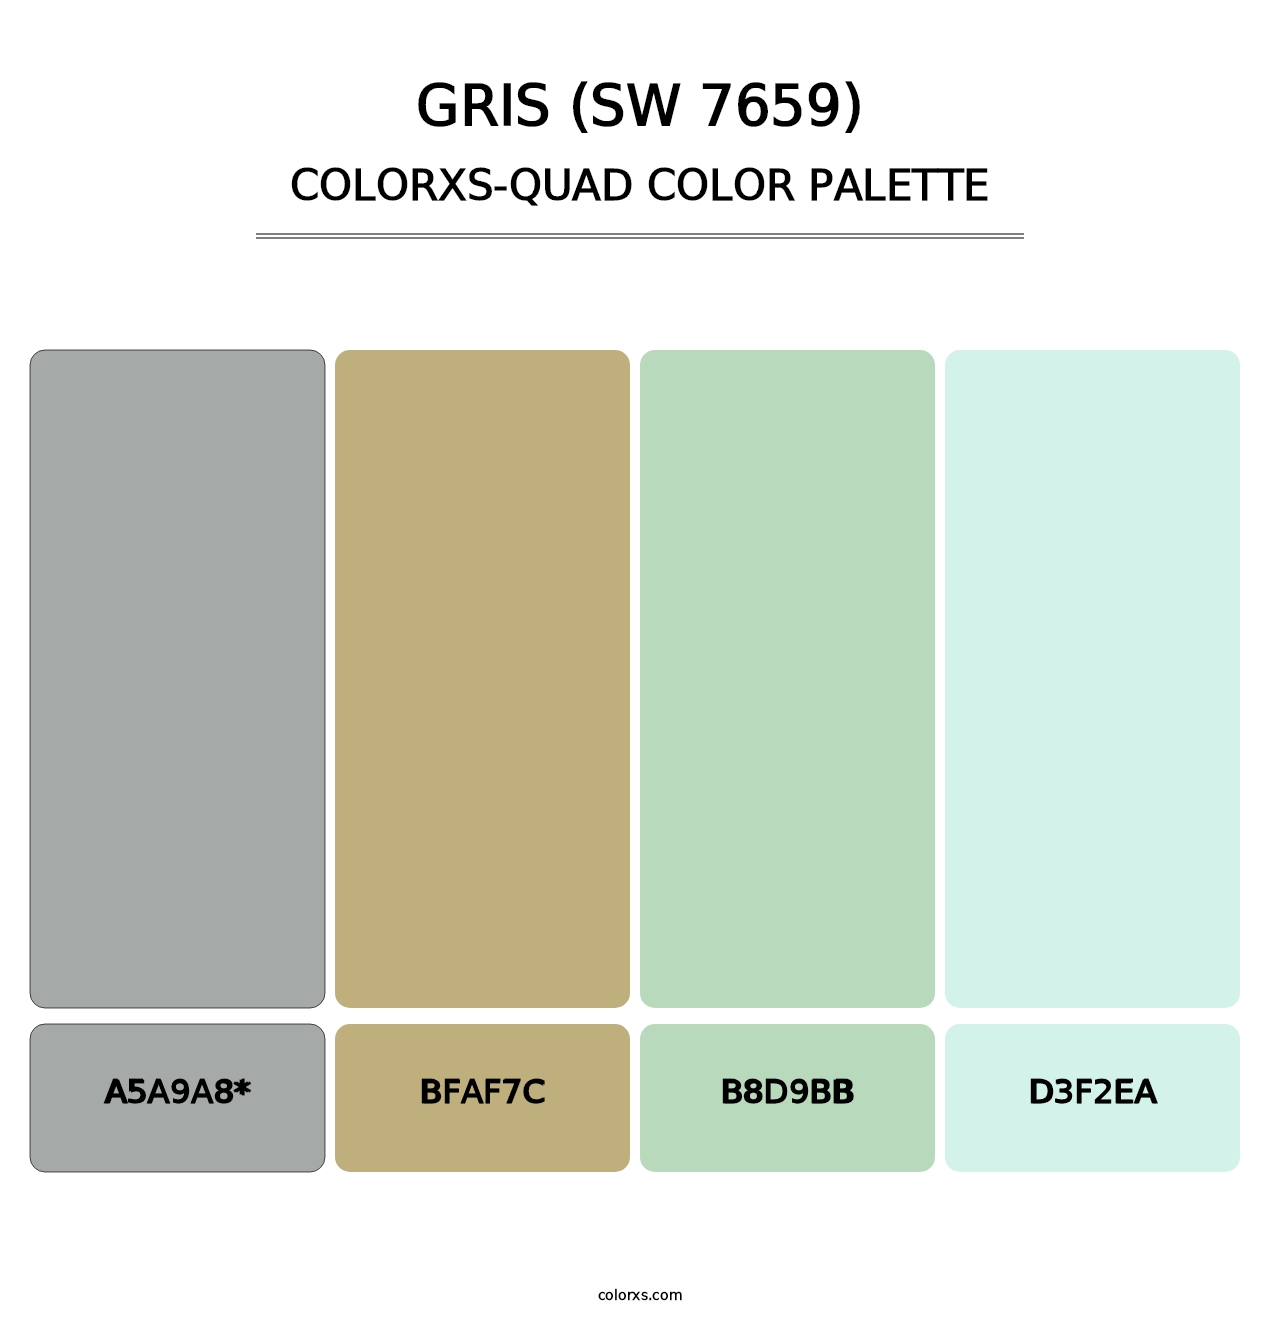 Gris (SW 7659) - Colorxs Quad Palette